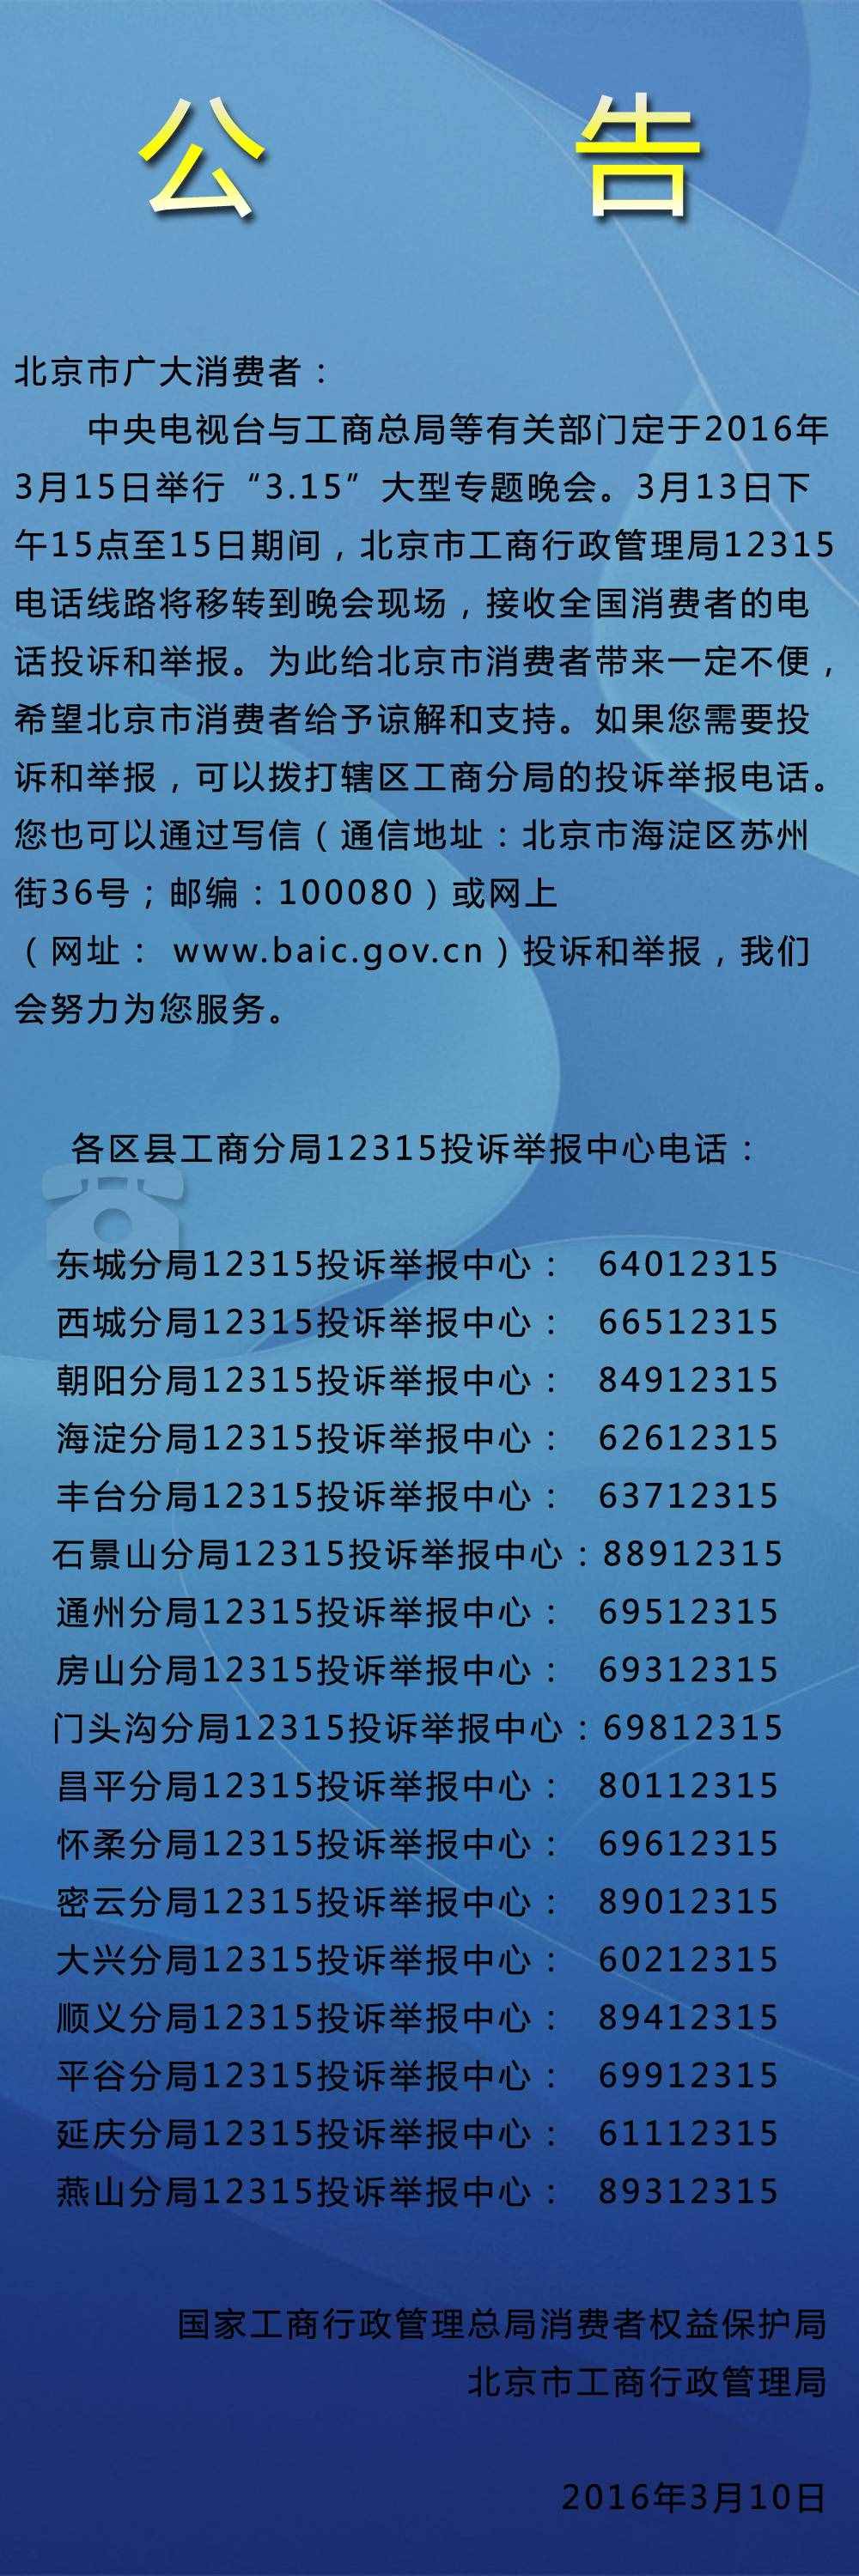 北京市工商局12315电话移转公告